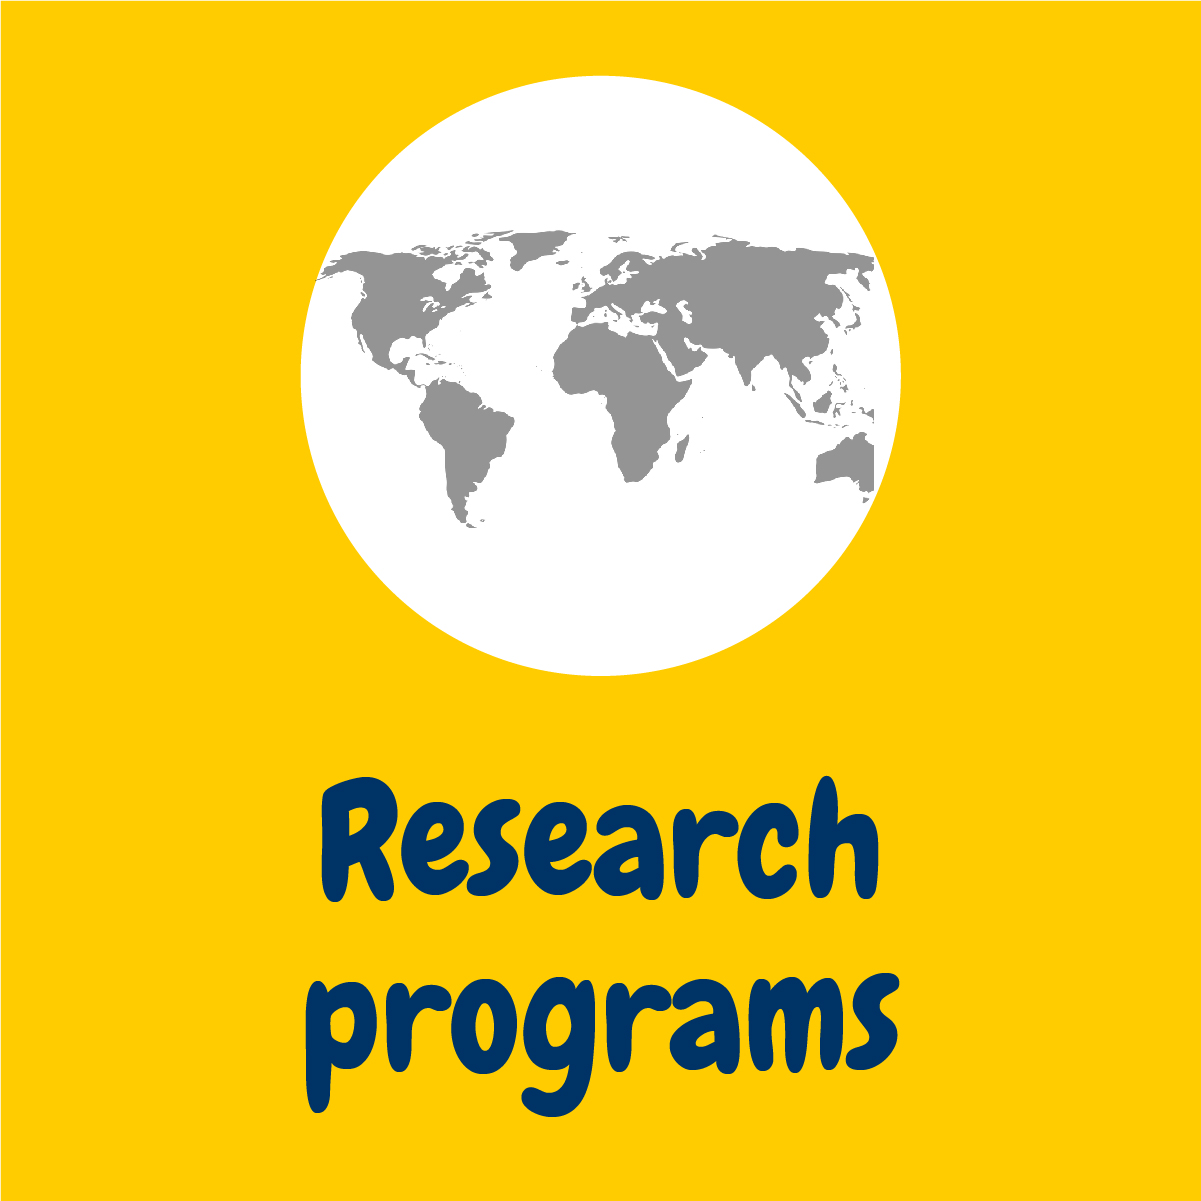 Research programs